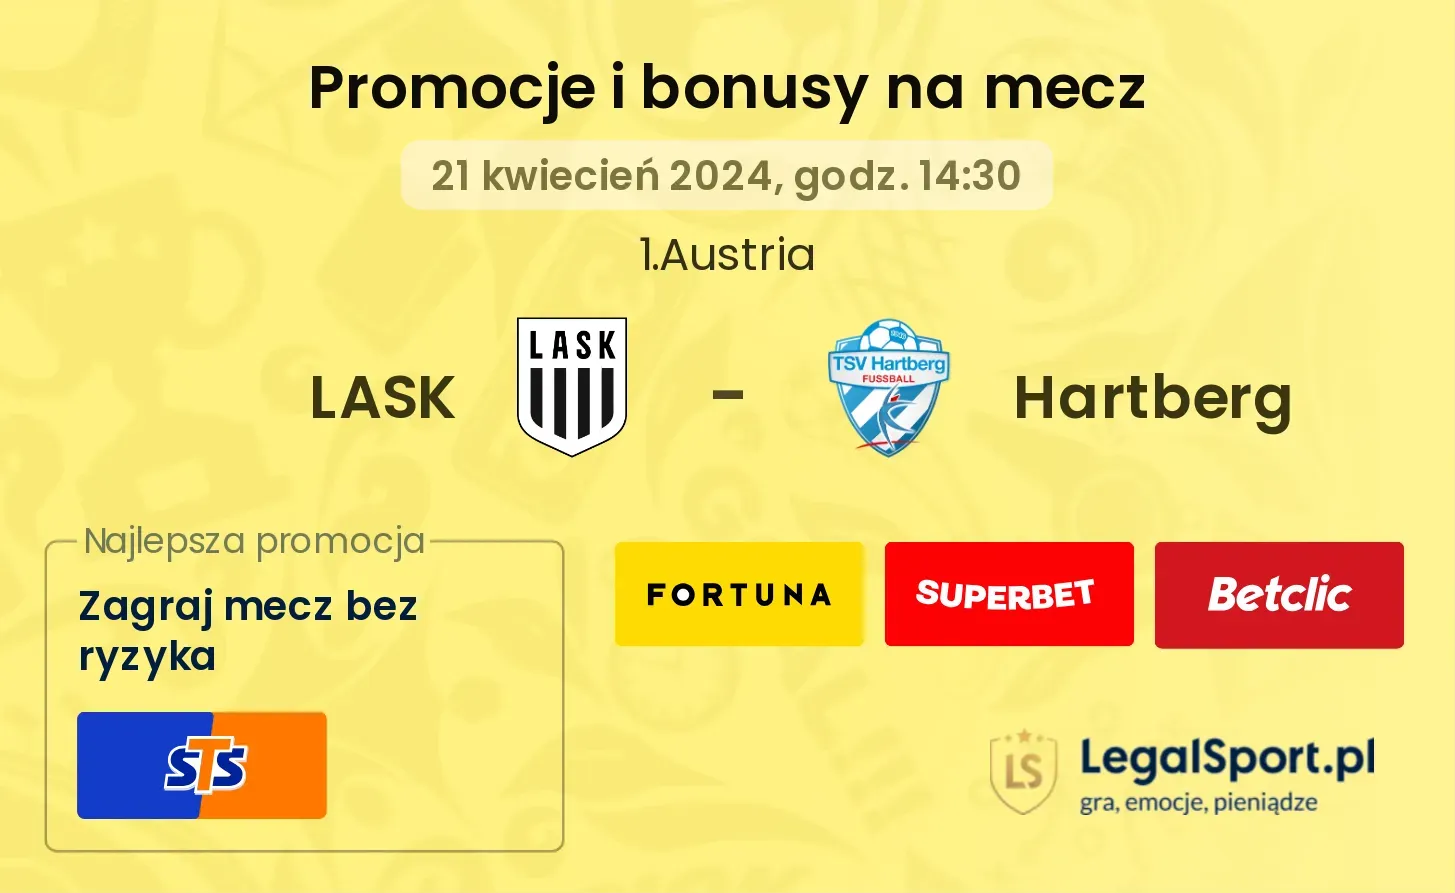 LASK - Hartberg promocje bonusy na mecz